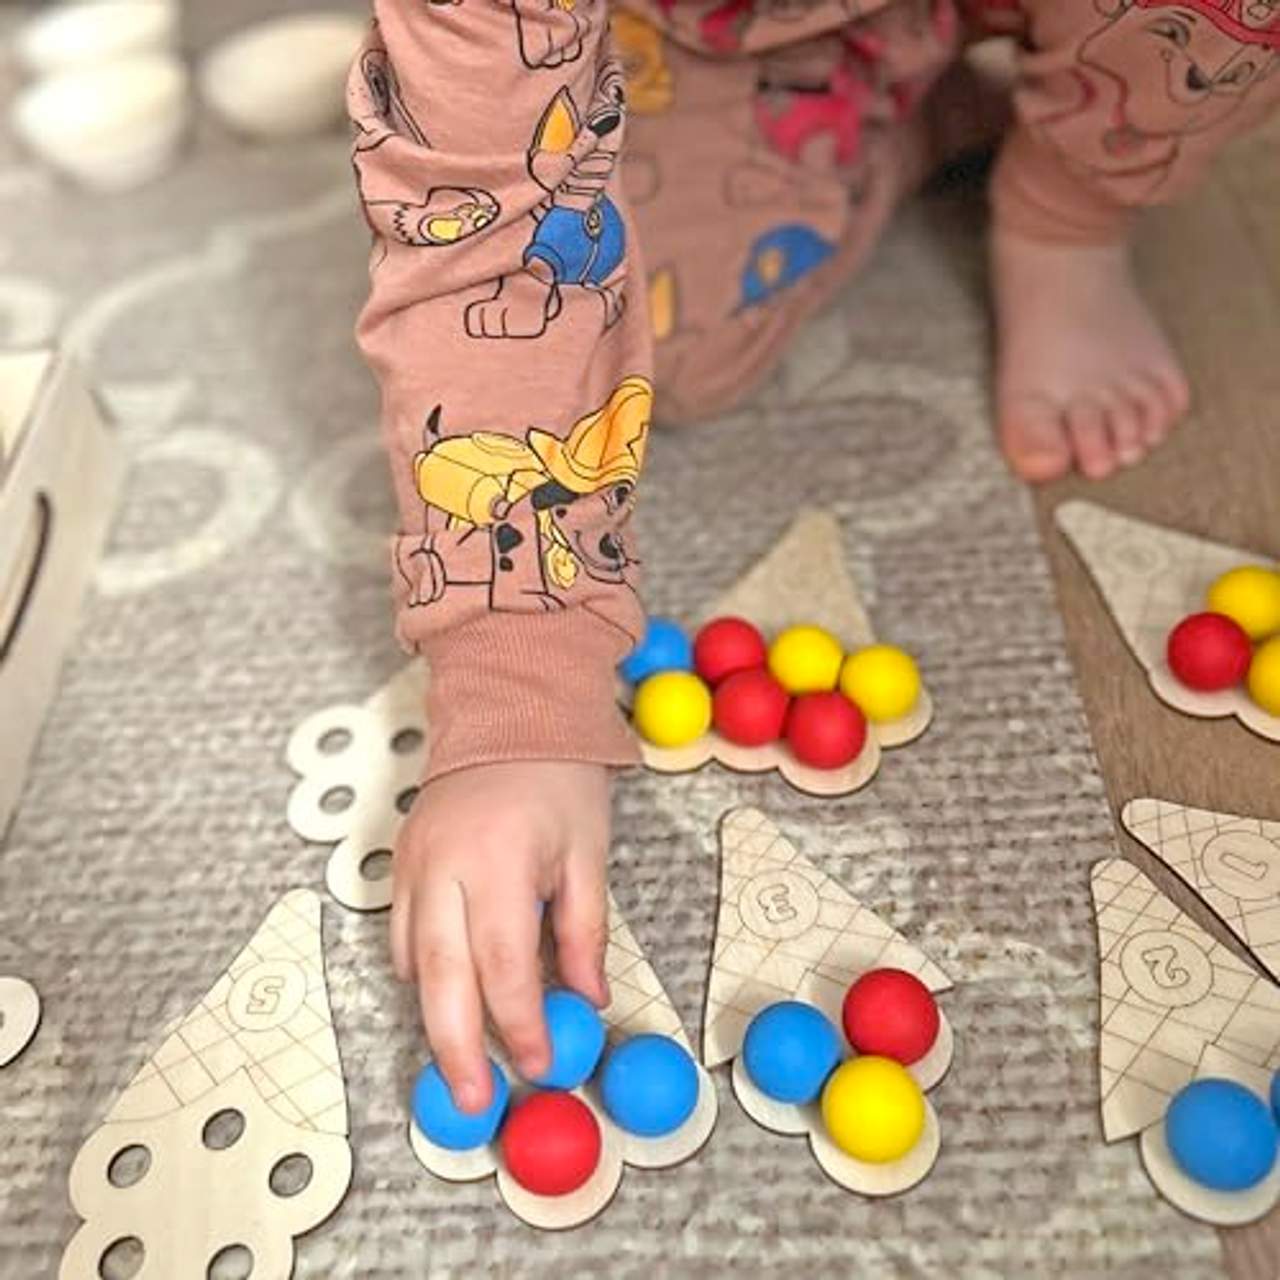 Ulanik Montessori Holzspielzeug Sortieren Lernspielzeug Süße